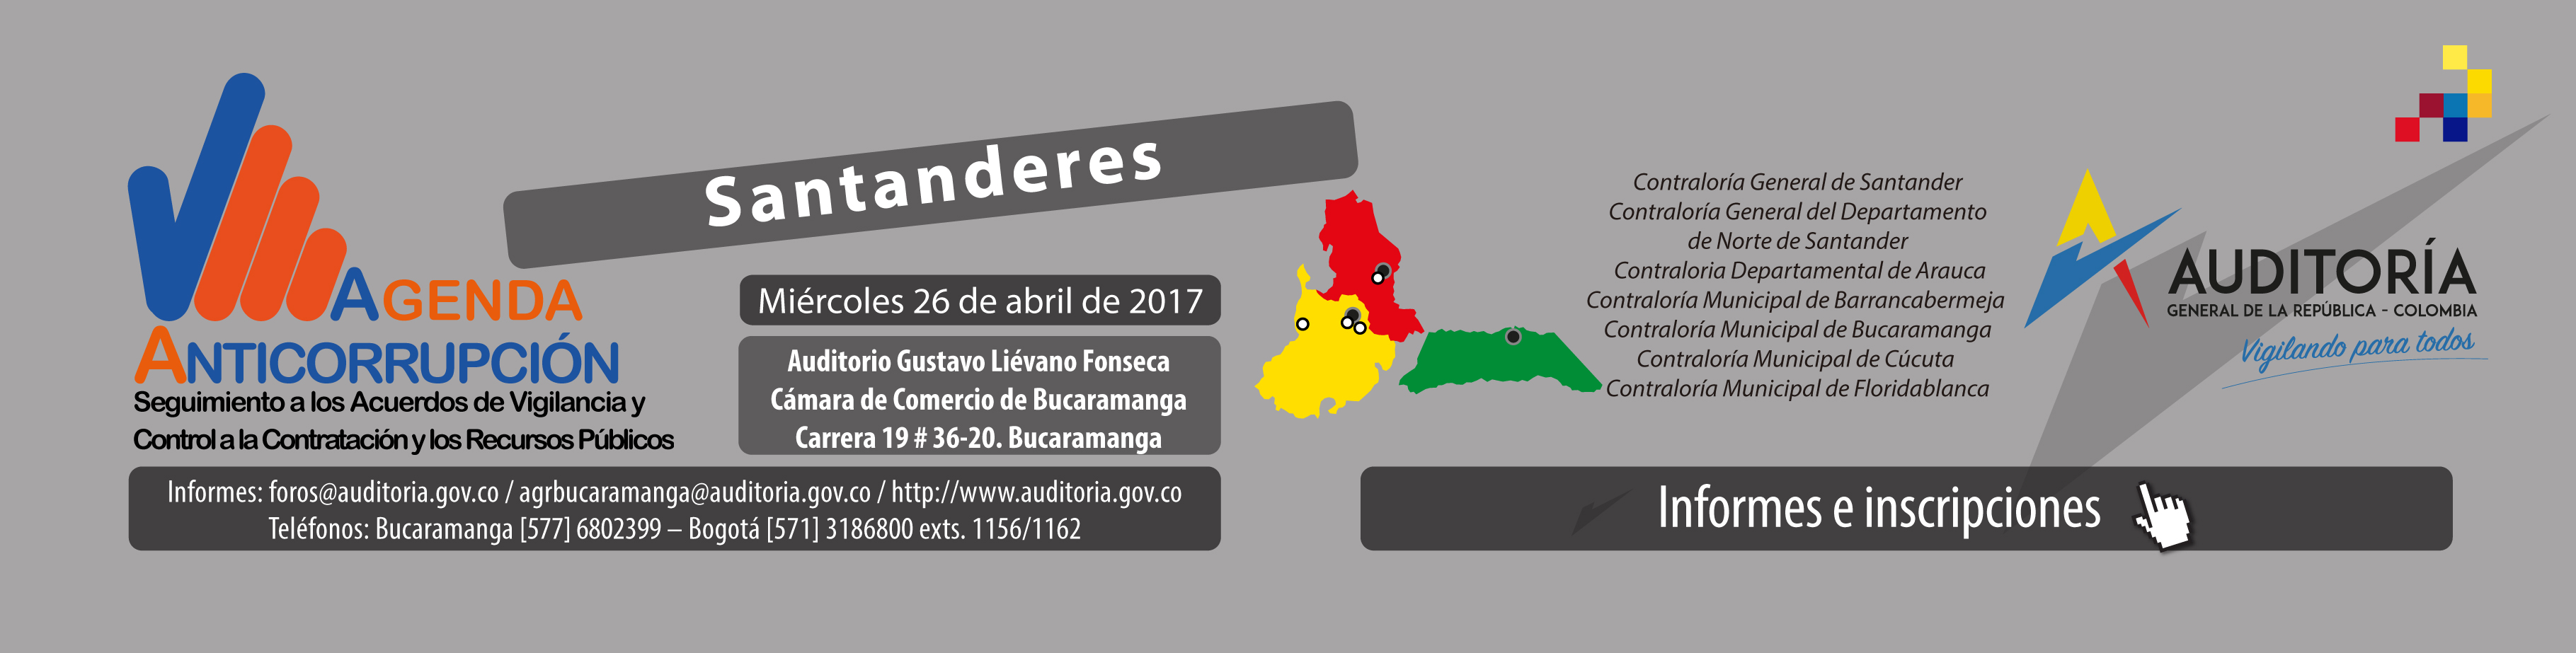  Mañana en Bucaramanga: Agenda Anticorrupción en audiencia pública organismos de control fiscal de los santanderes